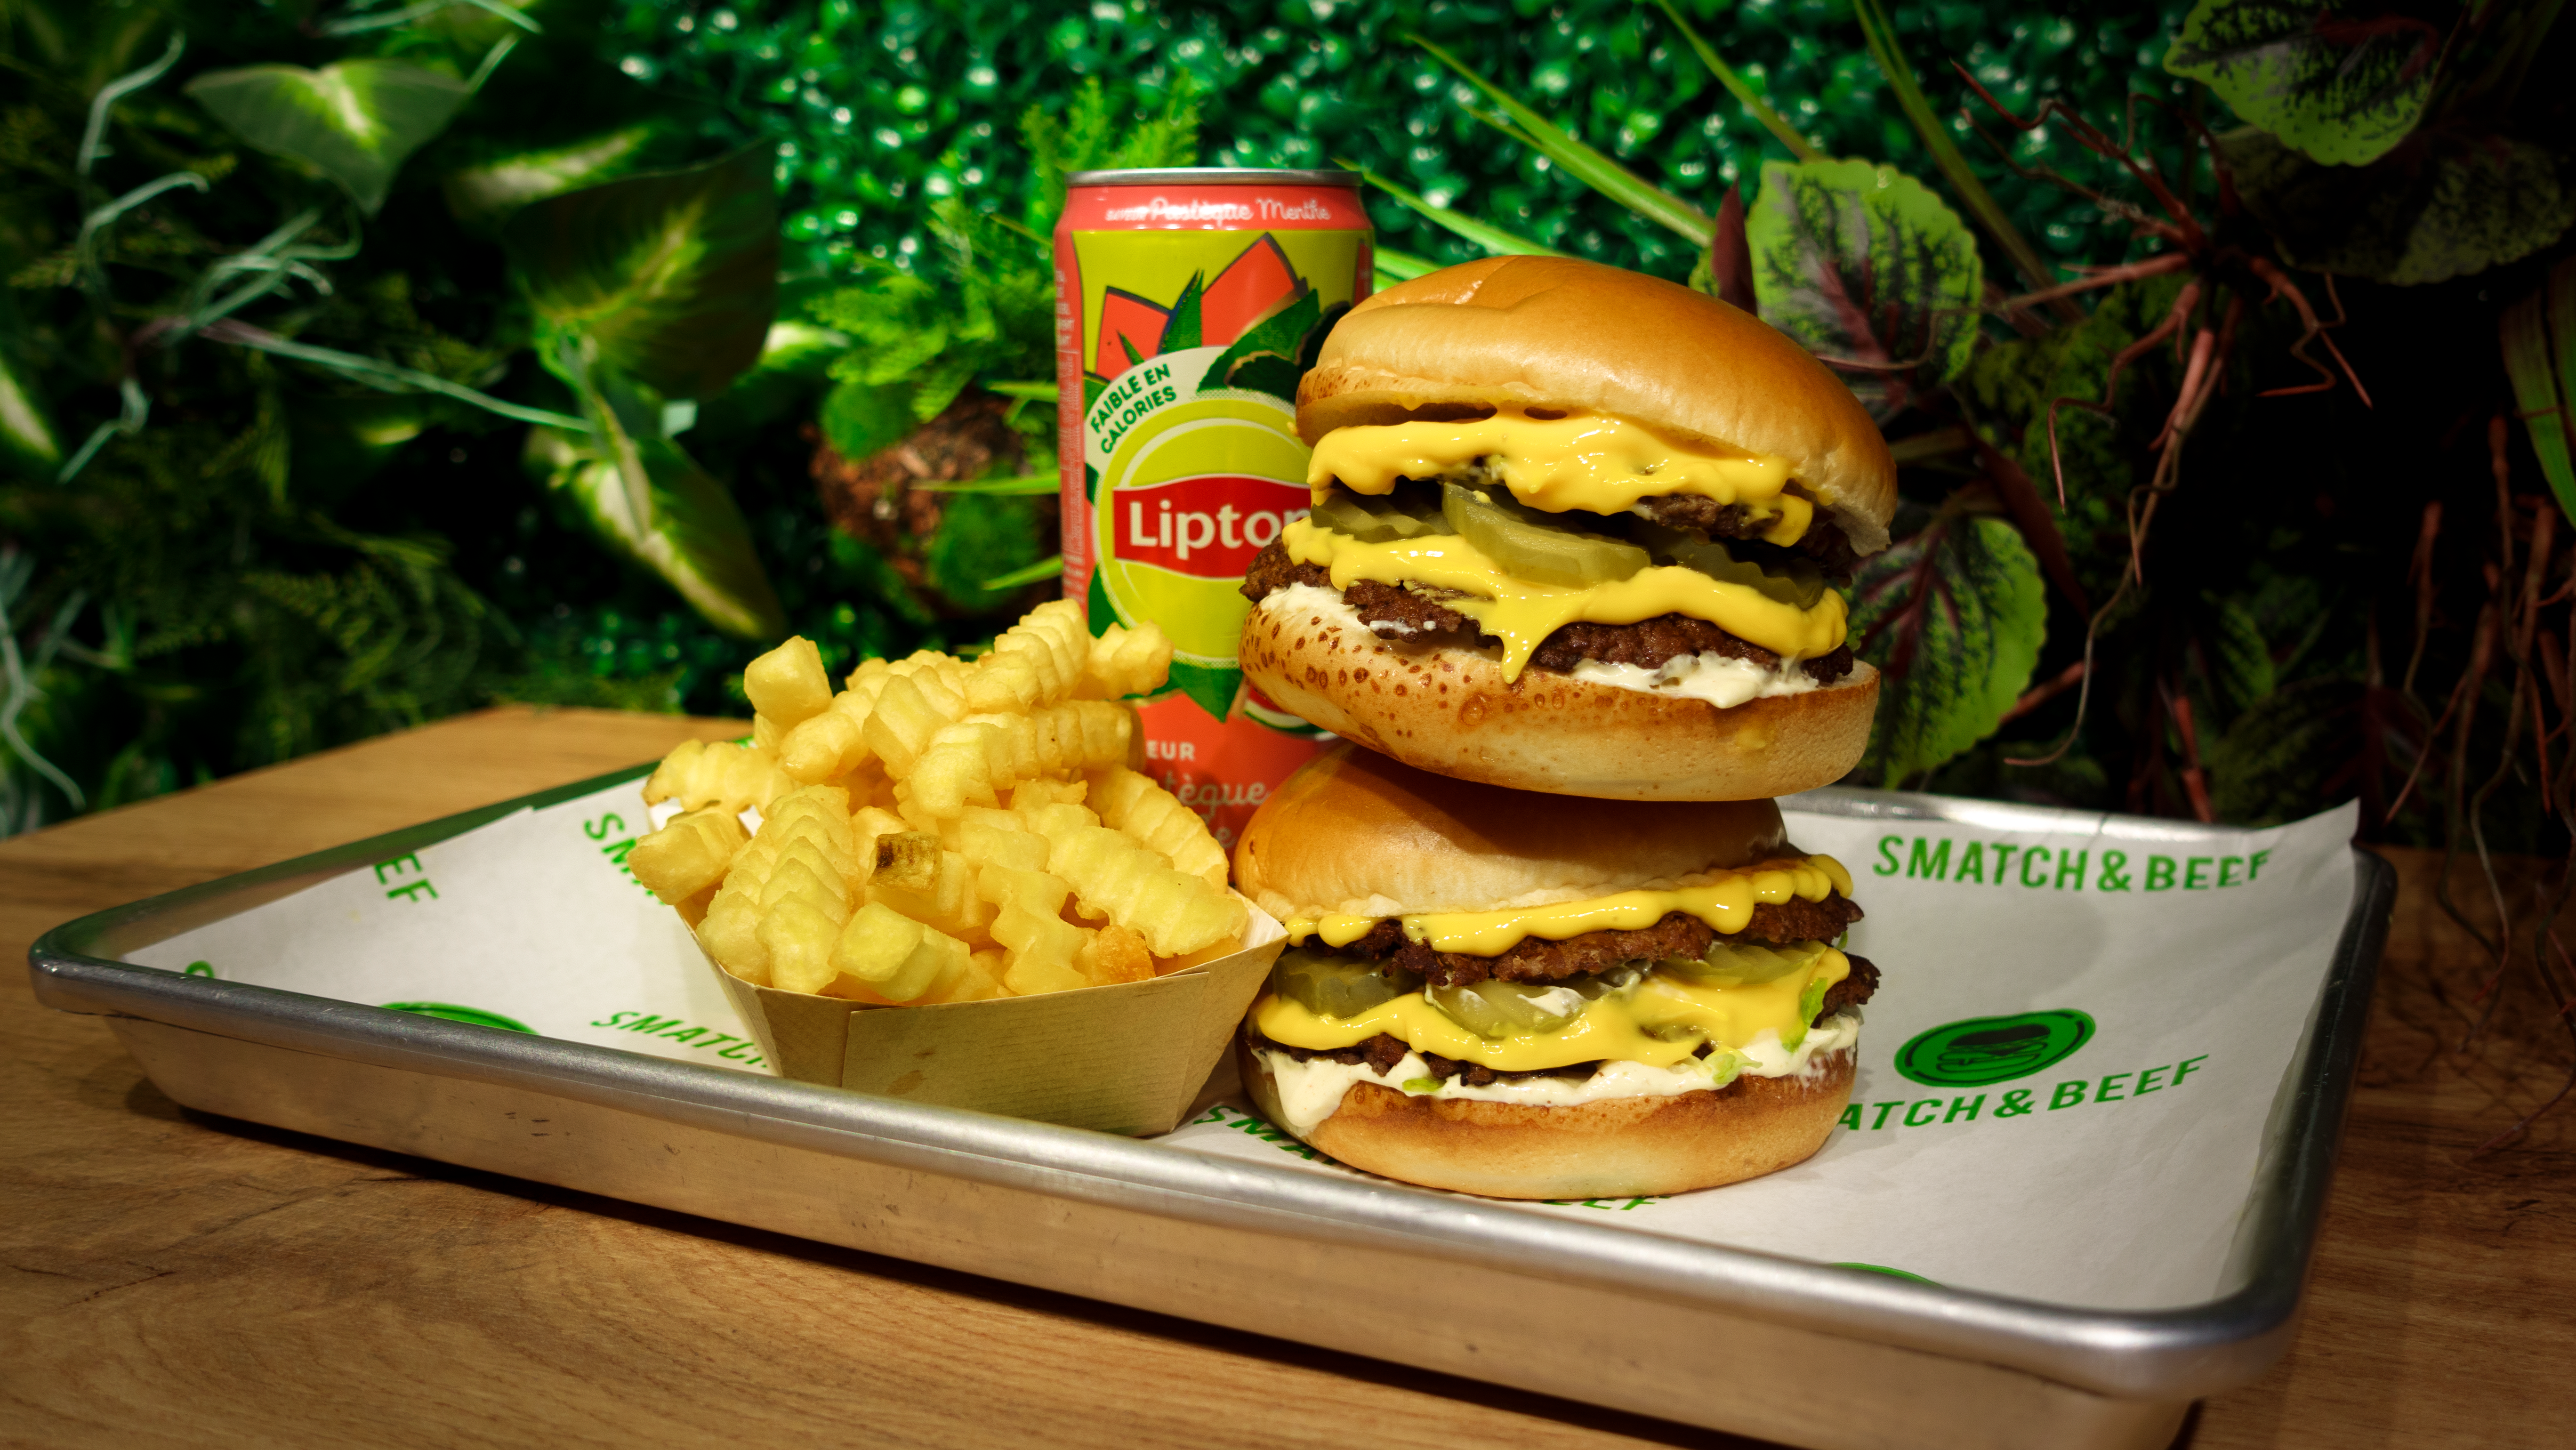 visuel menu smash Burger viande steak frais de bœuf fast-food halal lyon vaise mermoz